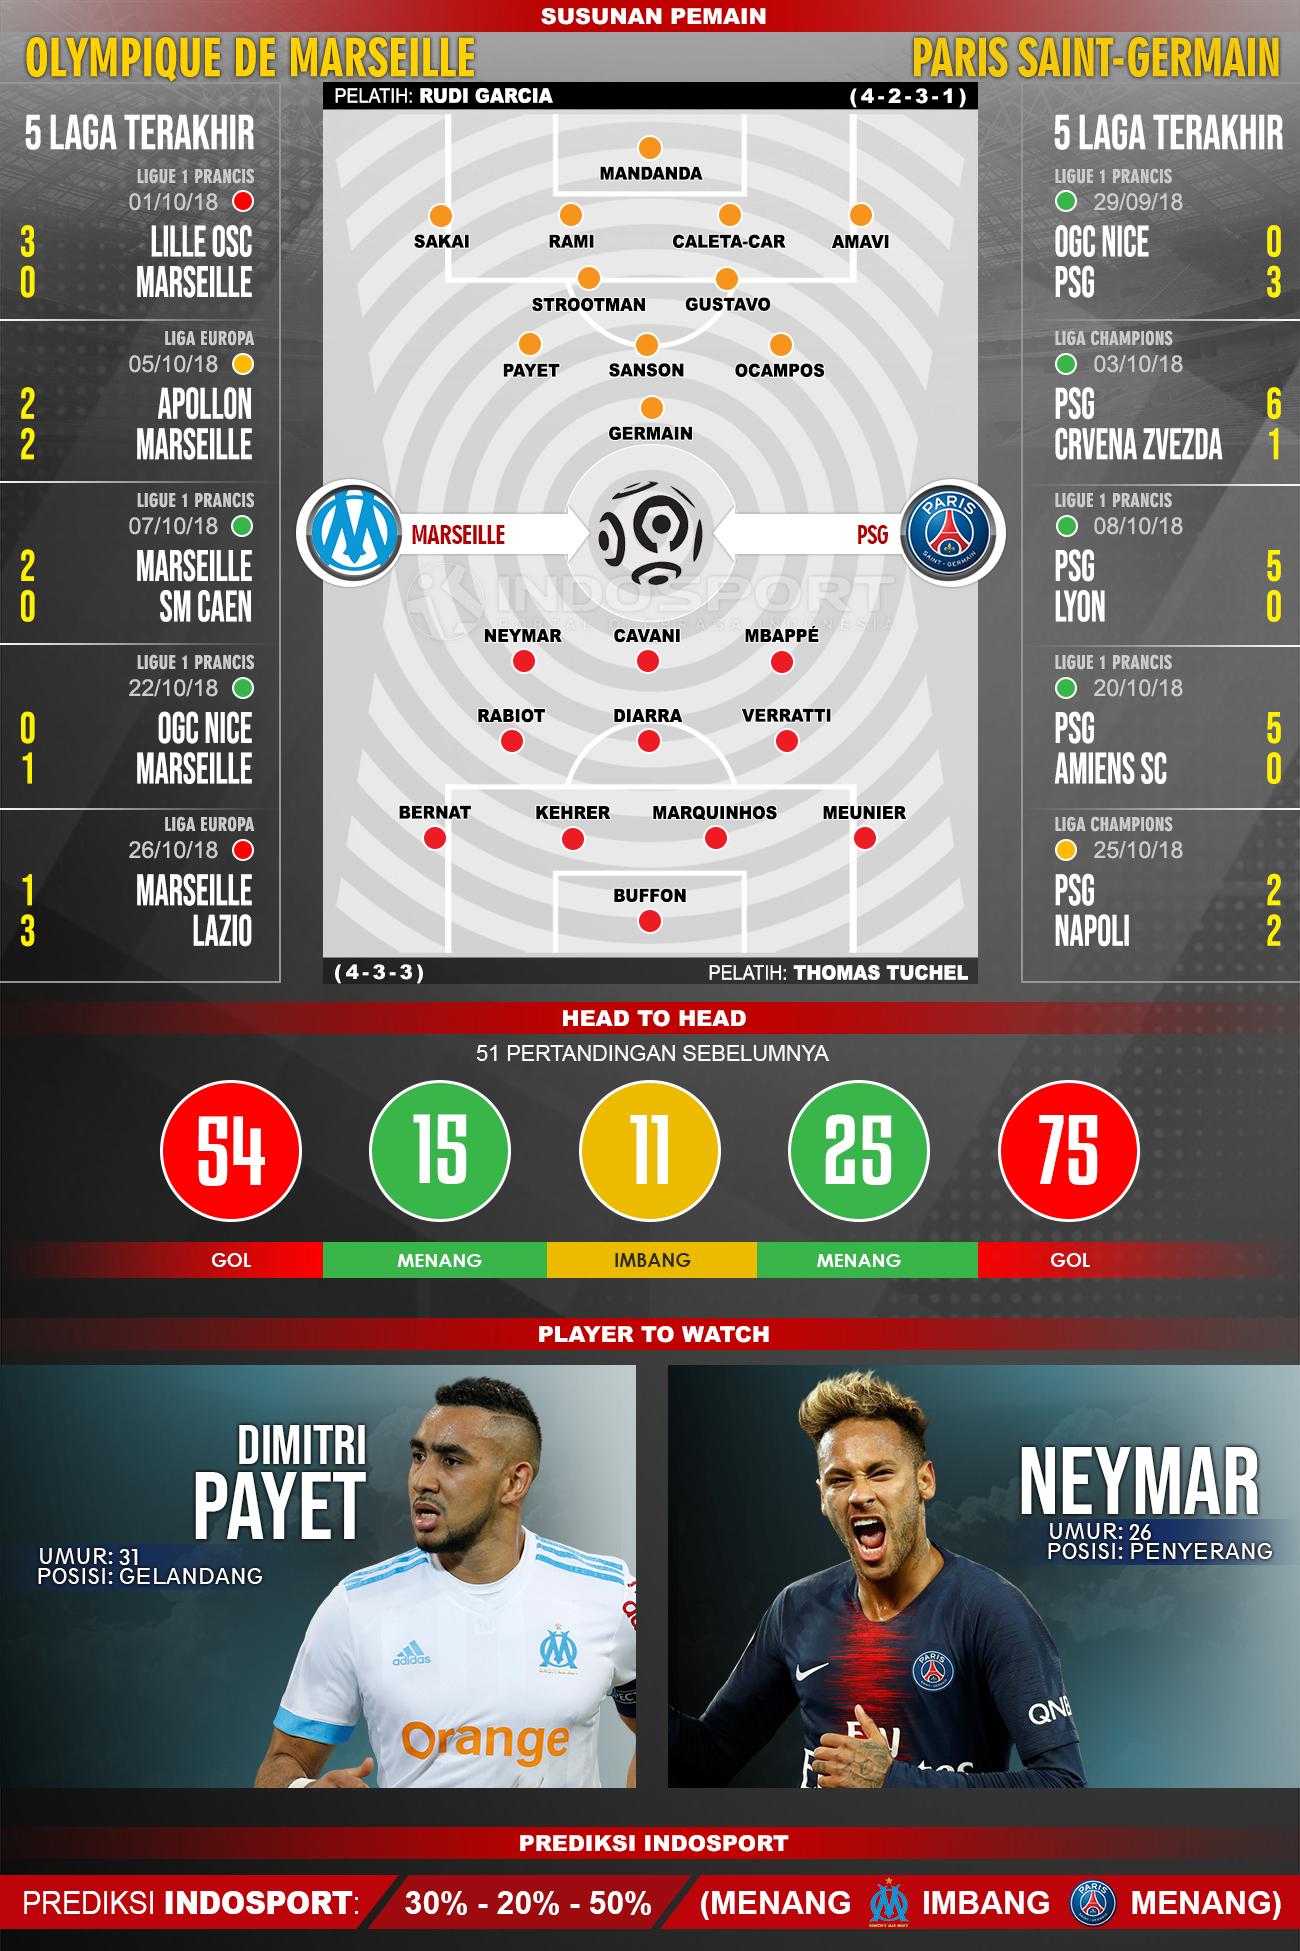 Marseille vs PSG (Susunan Pemain - Lima Laga Terakhir - Player to Watch - Prediksi Indosport) Copyright: INDOSPORT